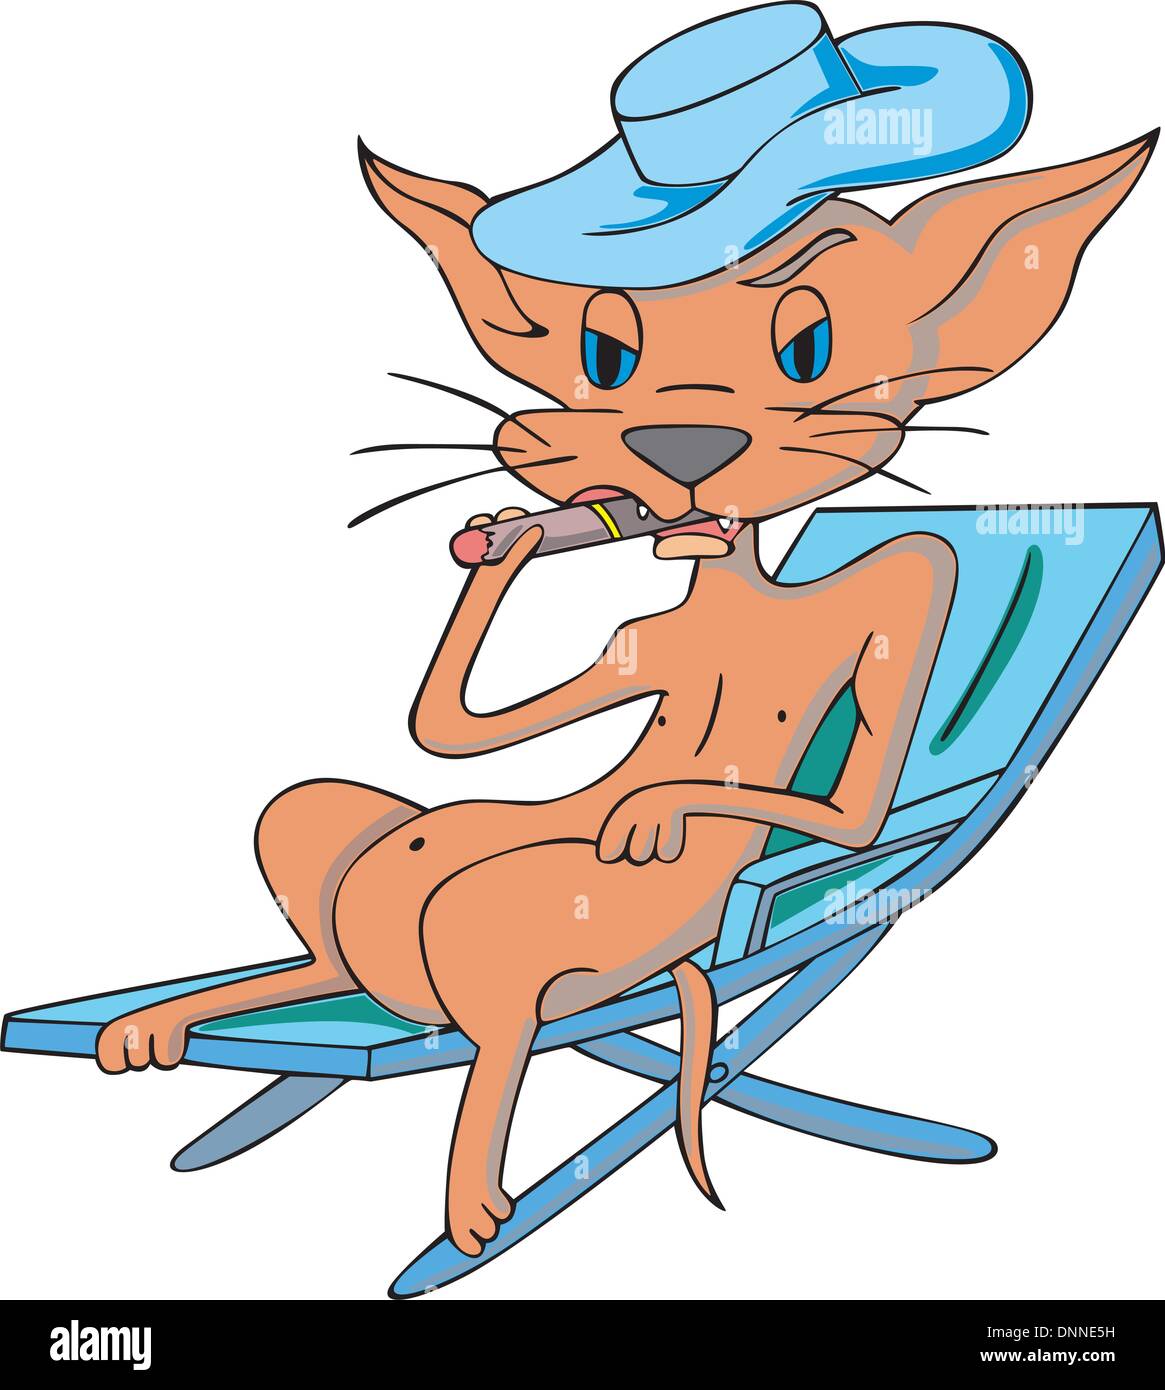 Eine Katze im Cartoon-Stil mit Hut, auf einem Strand Bett liegend und raucht eine Zigarre. EPS-Vektor-Illustration. Stock Vektor